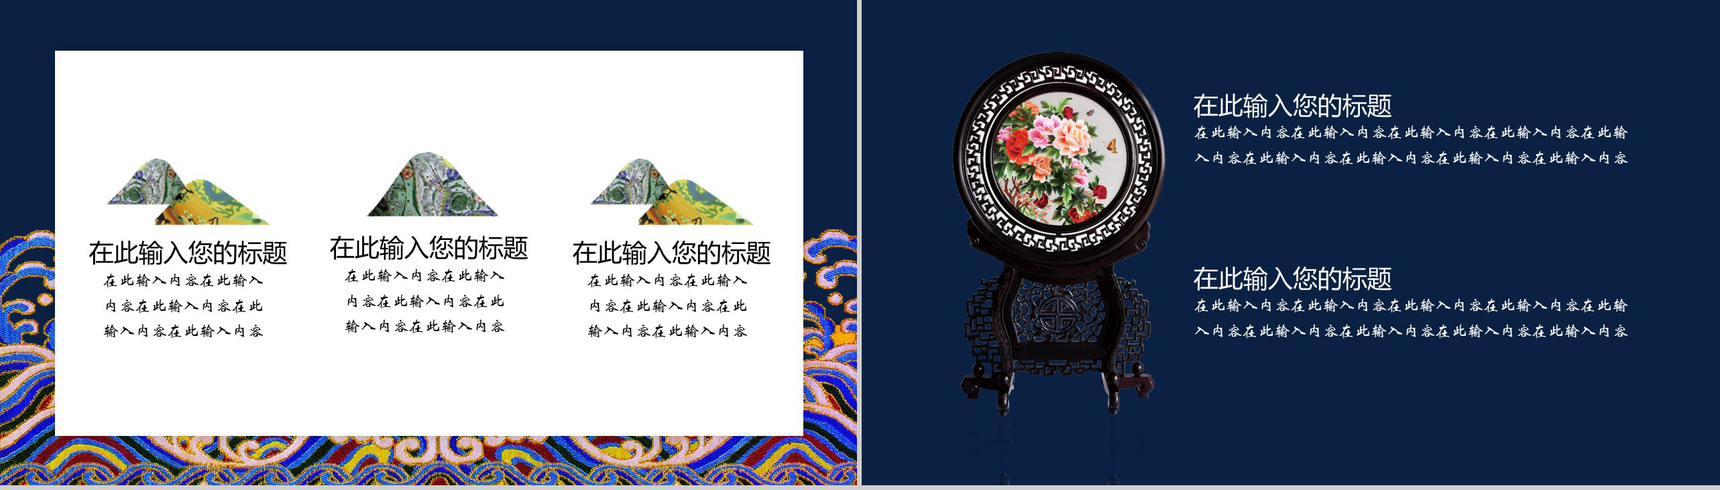 中国之美刺绣传统手艺PPT模板-4